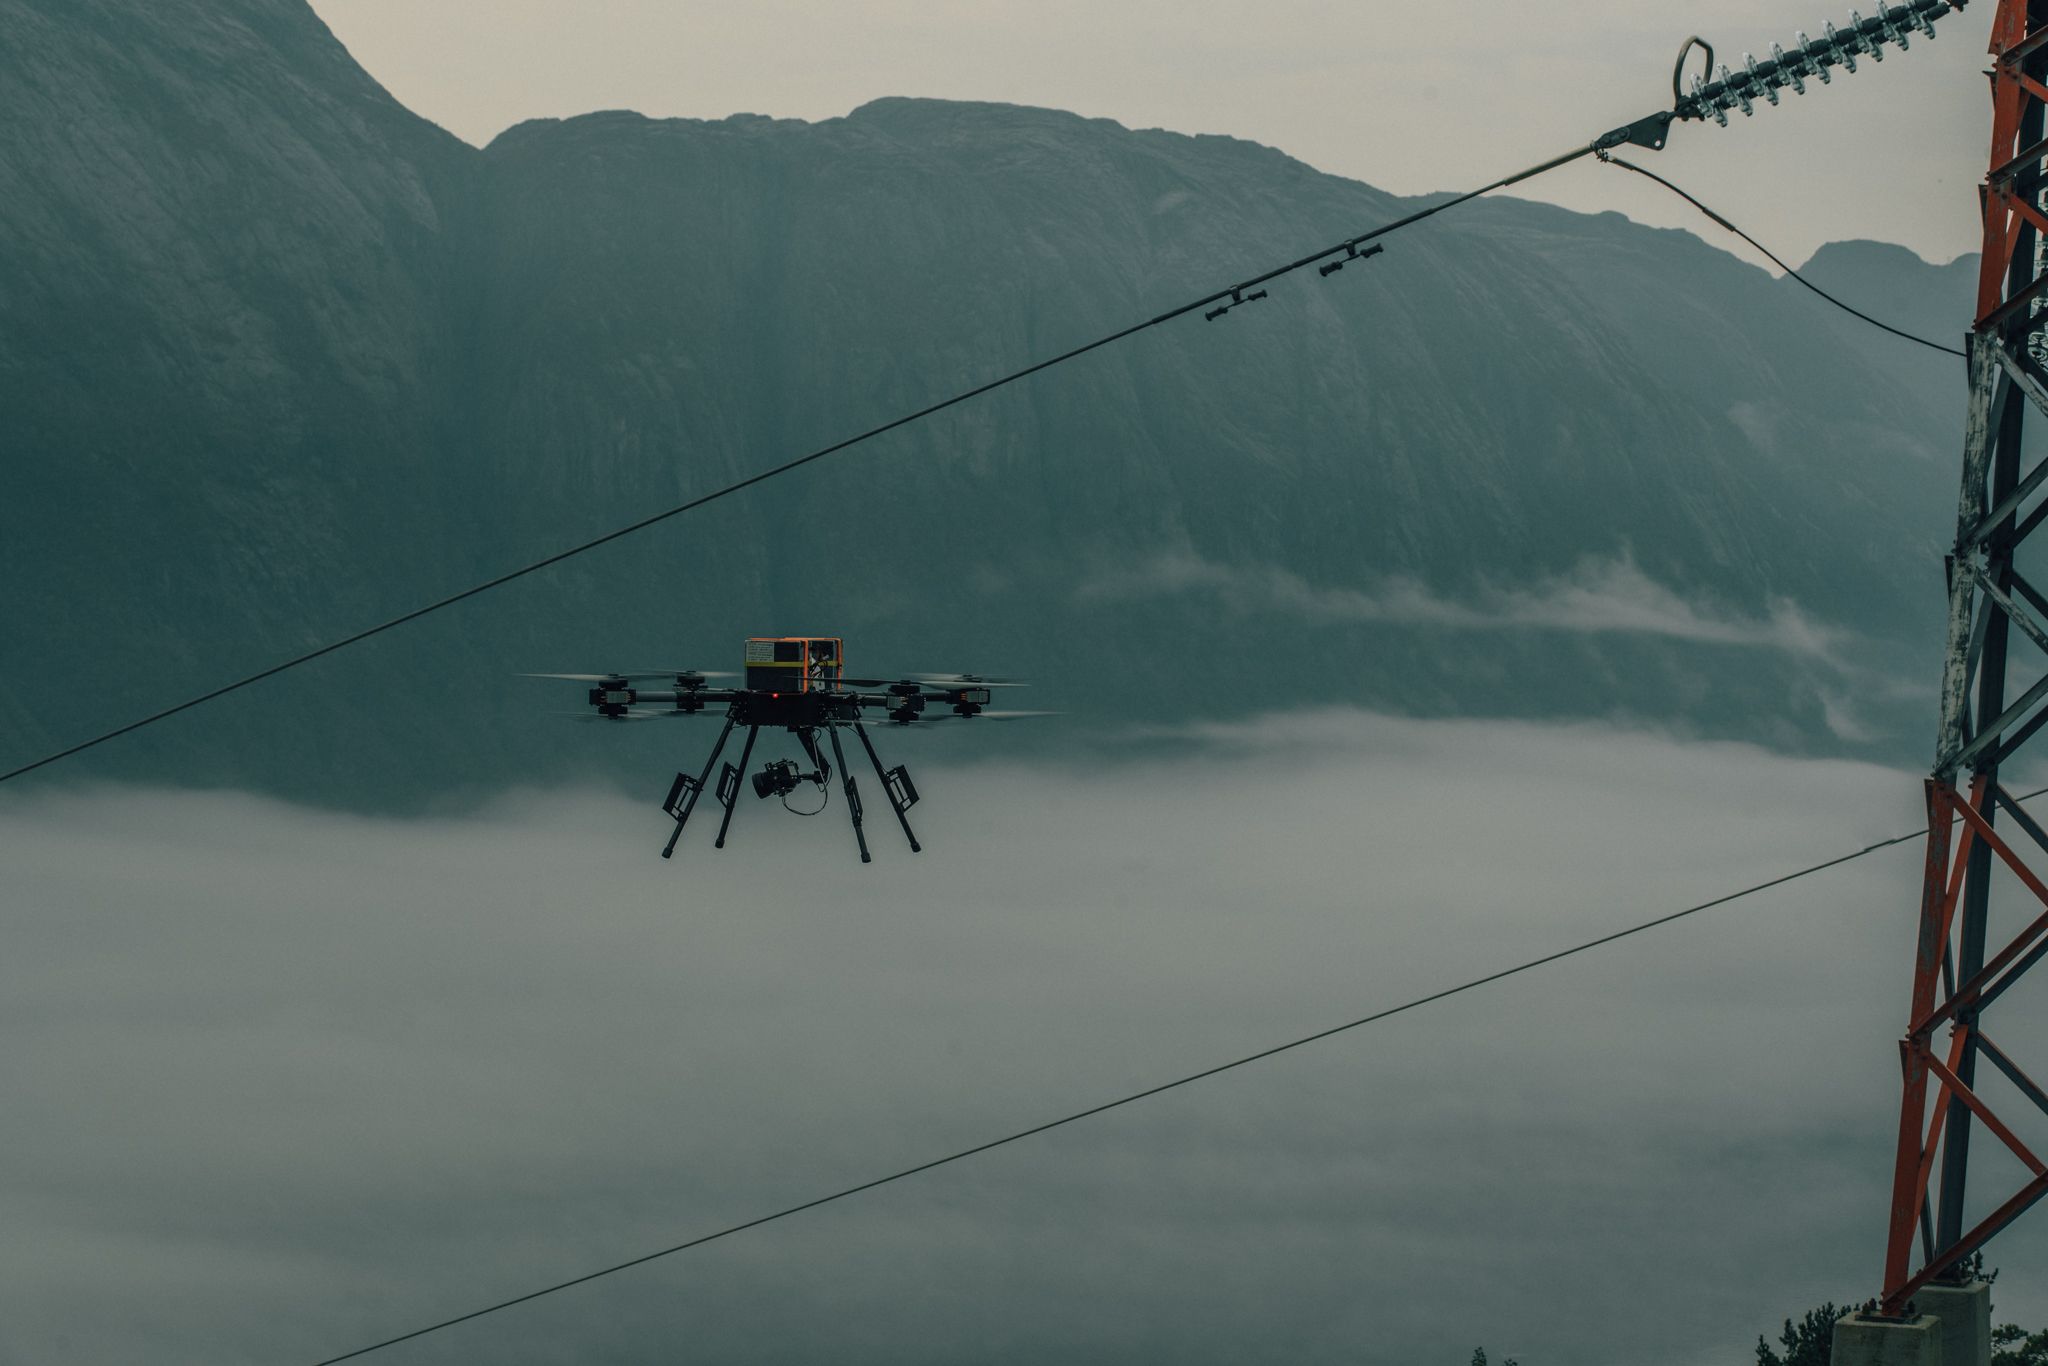 Glitre Nett overvåker hvert år store deler av linjenettet ved hjelp av drone.